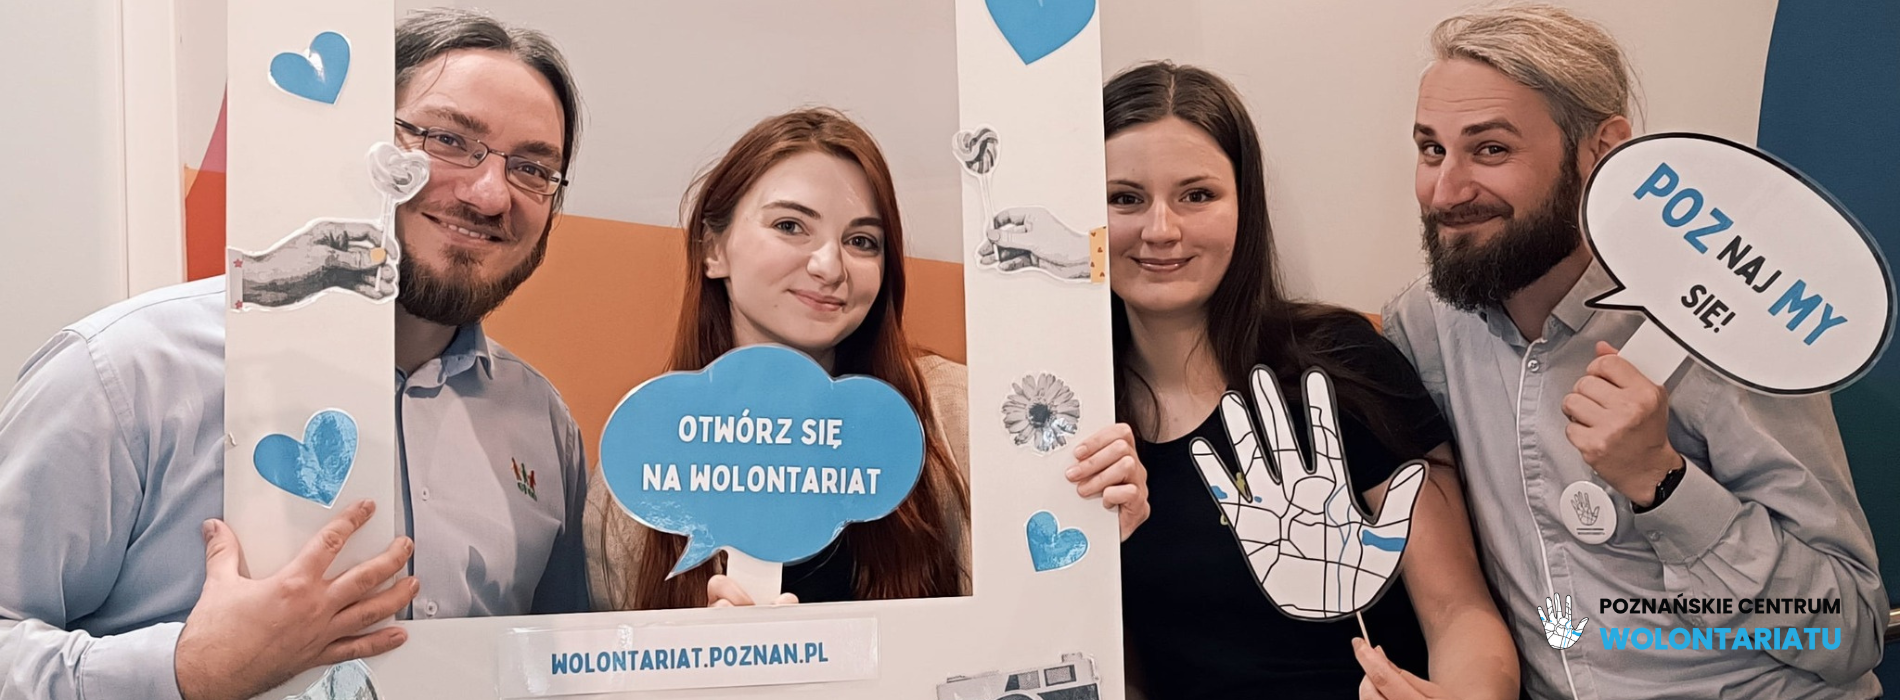 cztery uśmiechnięte osoby. Dwóch mężczyzn i dwie kobiety. Trzymają w dłoniach banery z napisem Poznańskie Centrum Wolontariatu. Pozują w ramce do zdjęć.